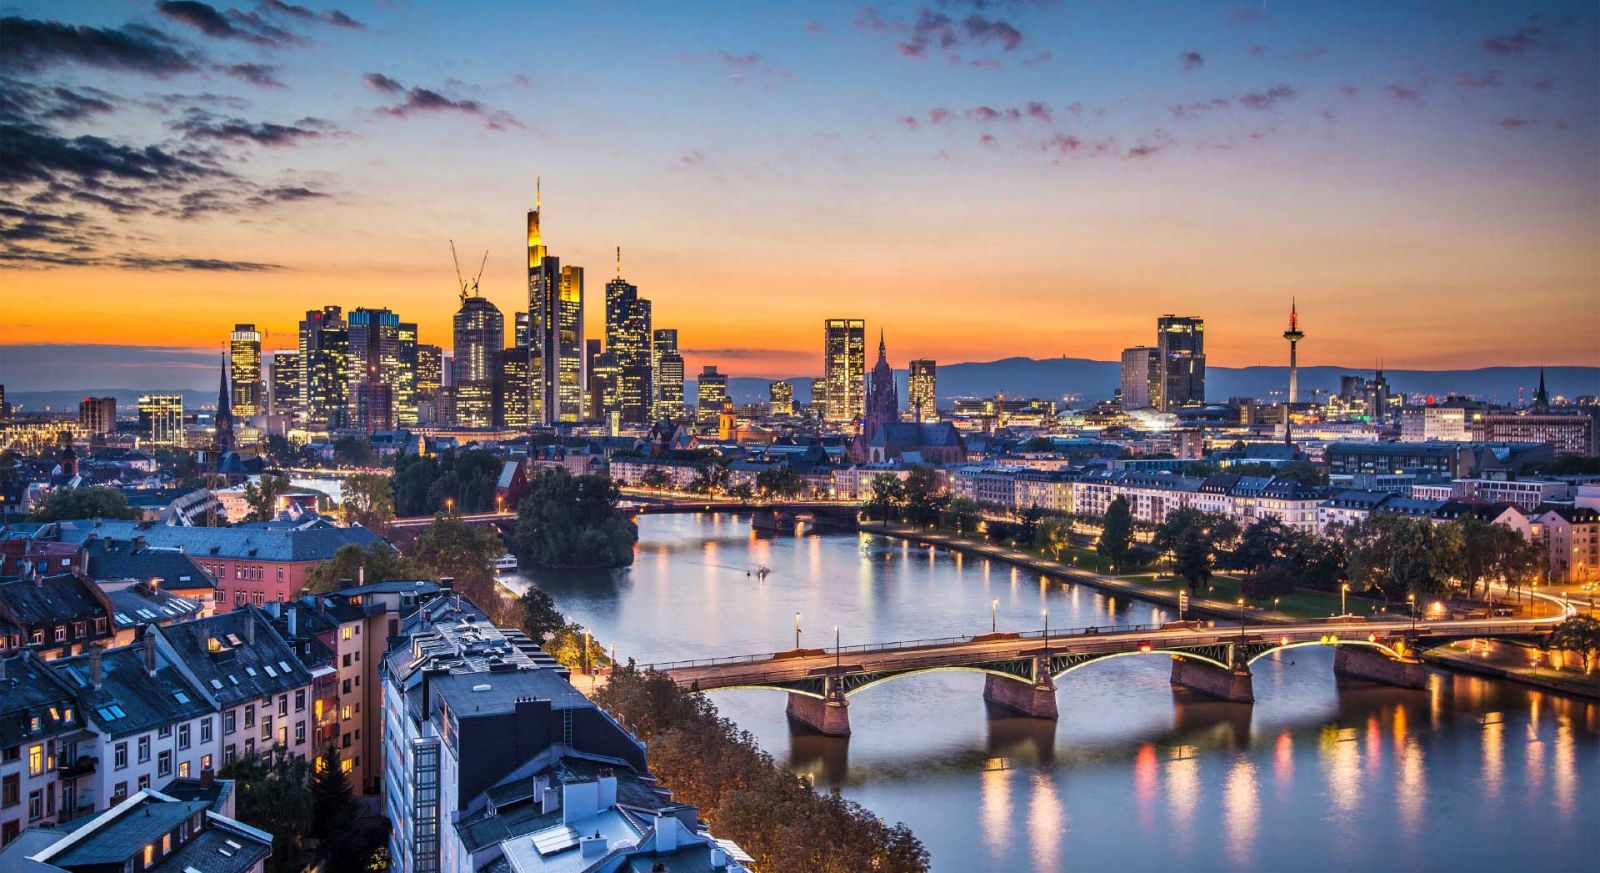 Thành phố Frankfurt mang trong mình vẻ đẹp hiện đại và năng động